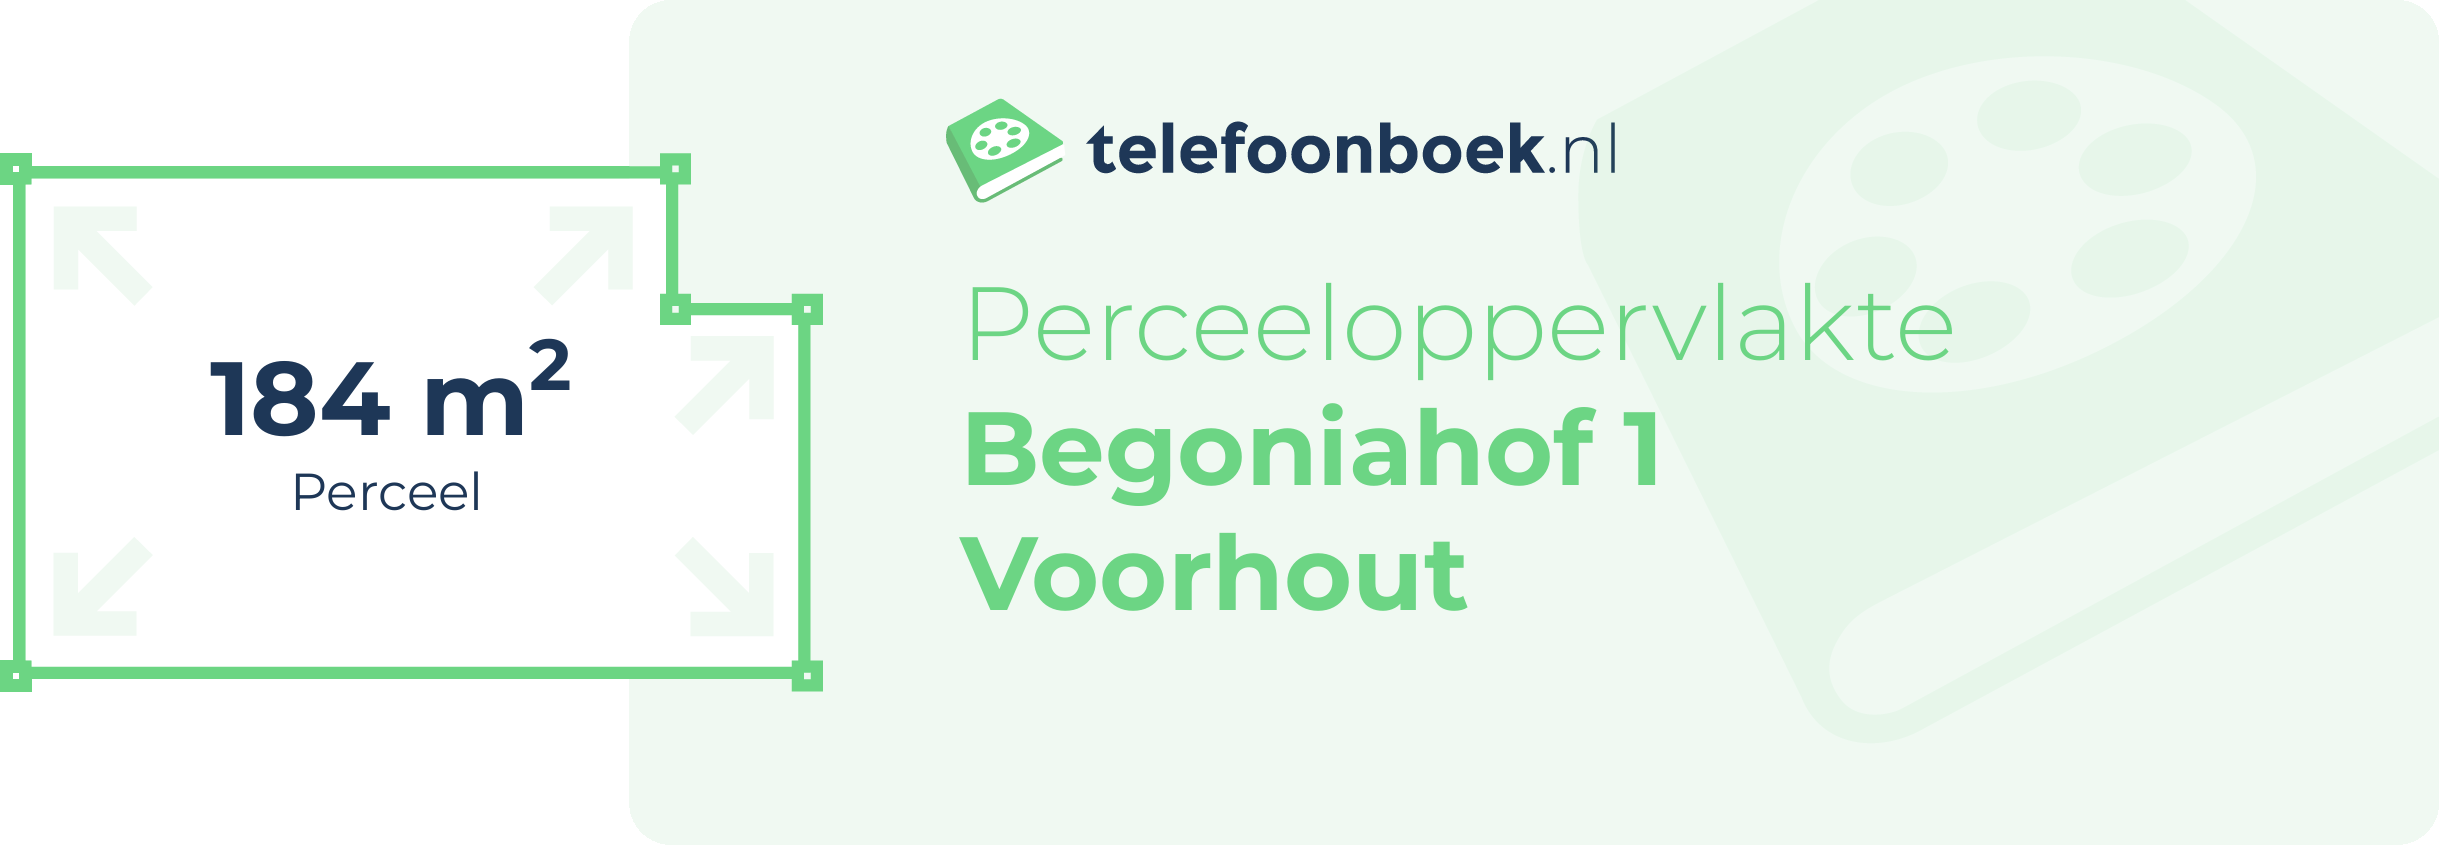 Perceeloppervlakte Begoniahof 1 Voorhout